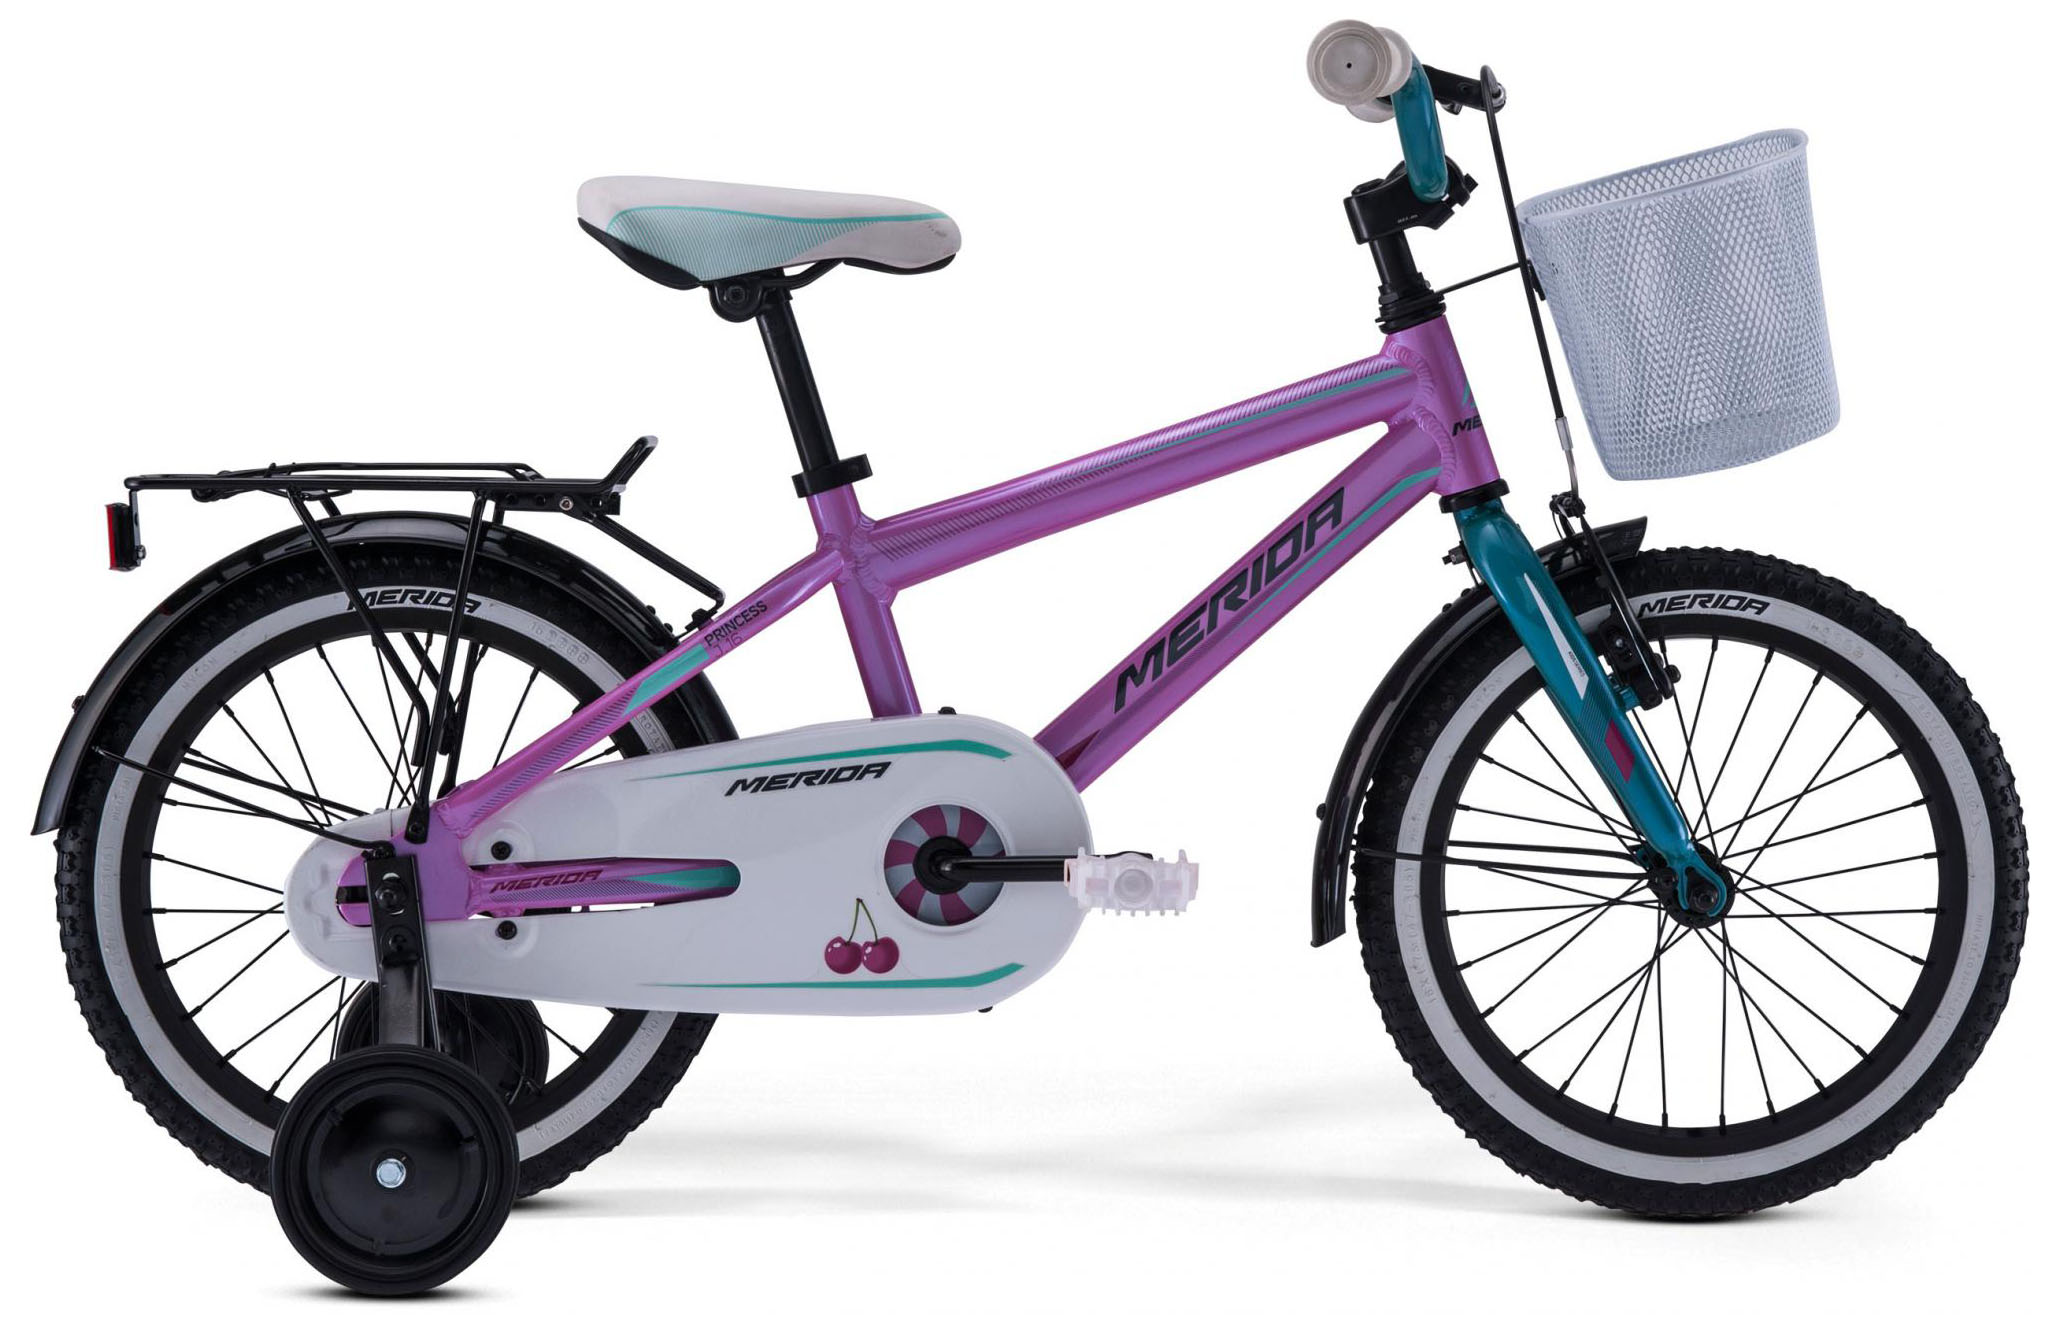  Отзывы о Детском велосипеде Merida Princess J16 2019